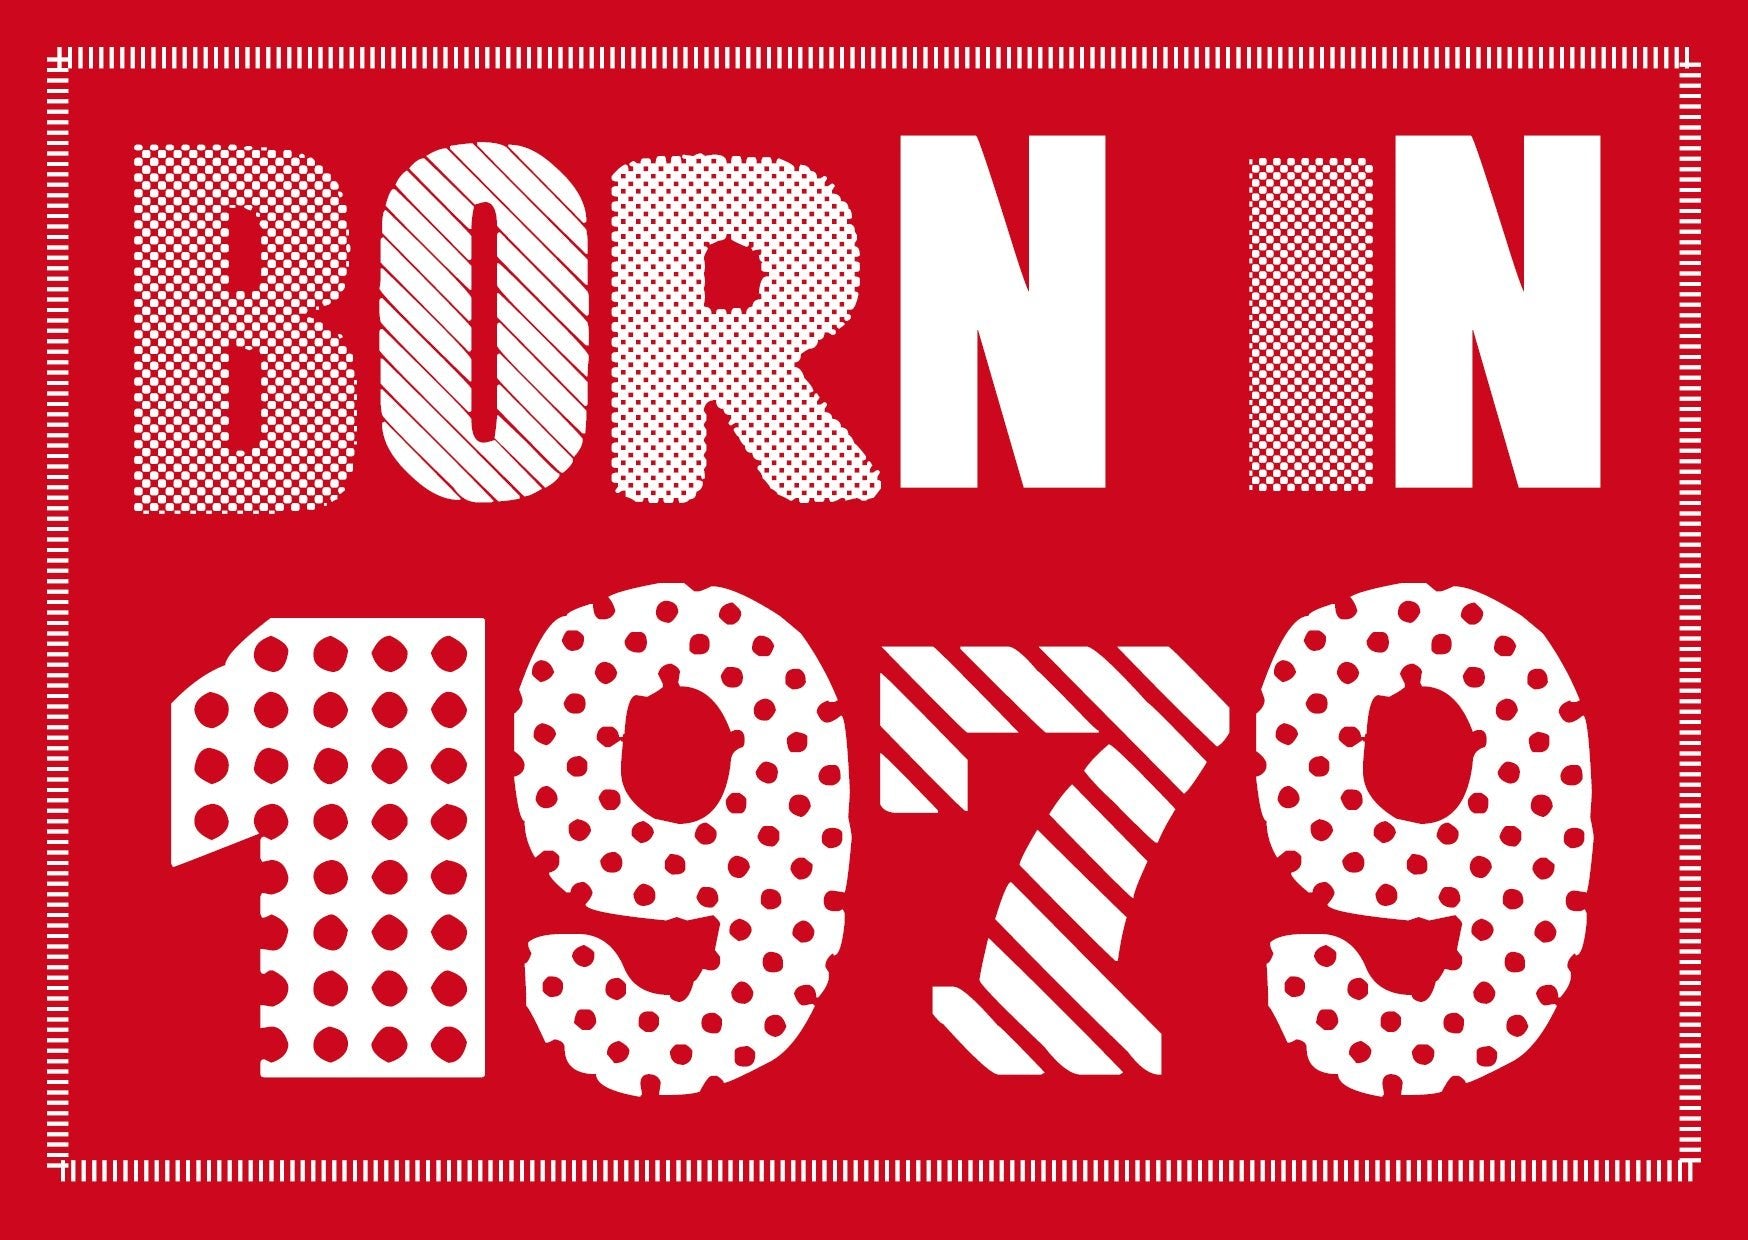 FARBTEST - Einladung zum 60. Geburtstag: Born in 1960 - Individuelle Einladung